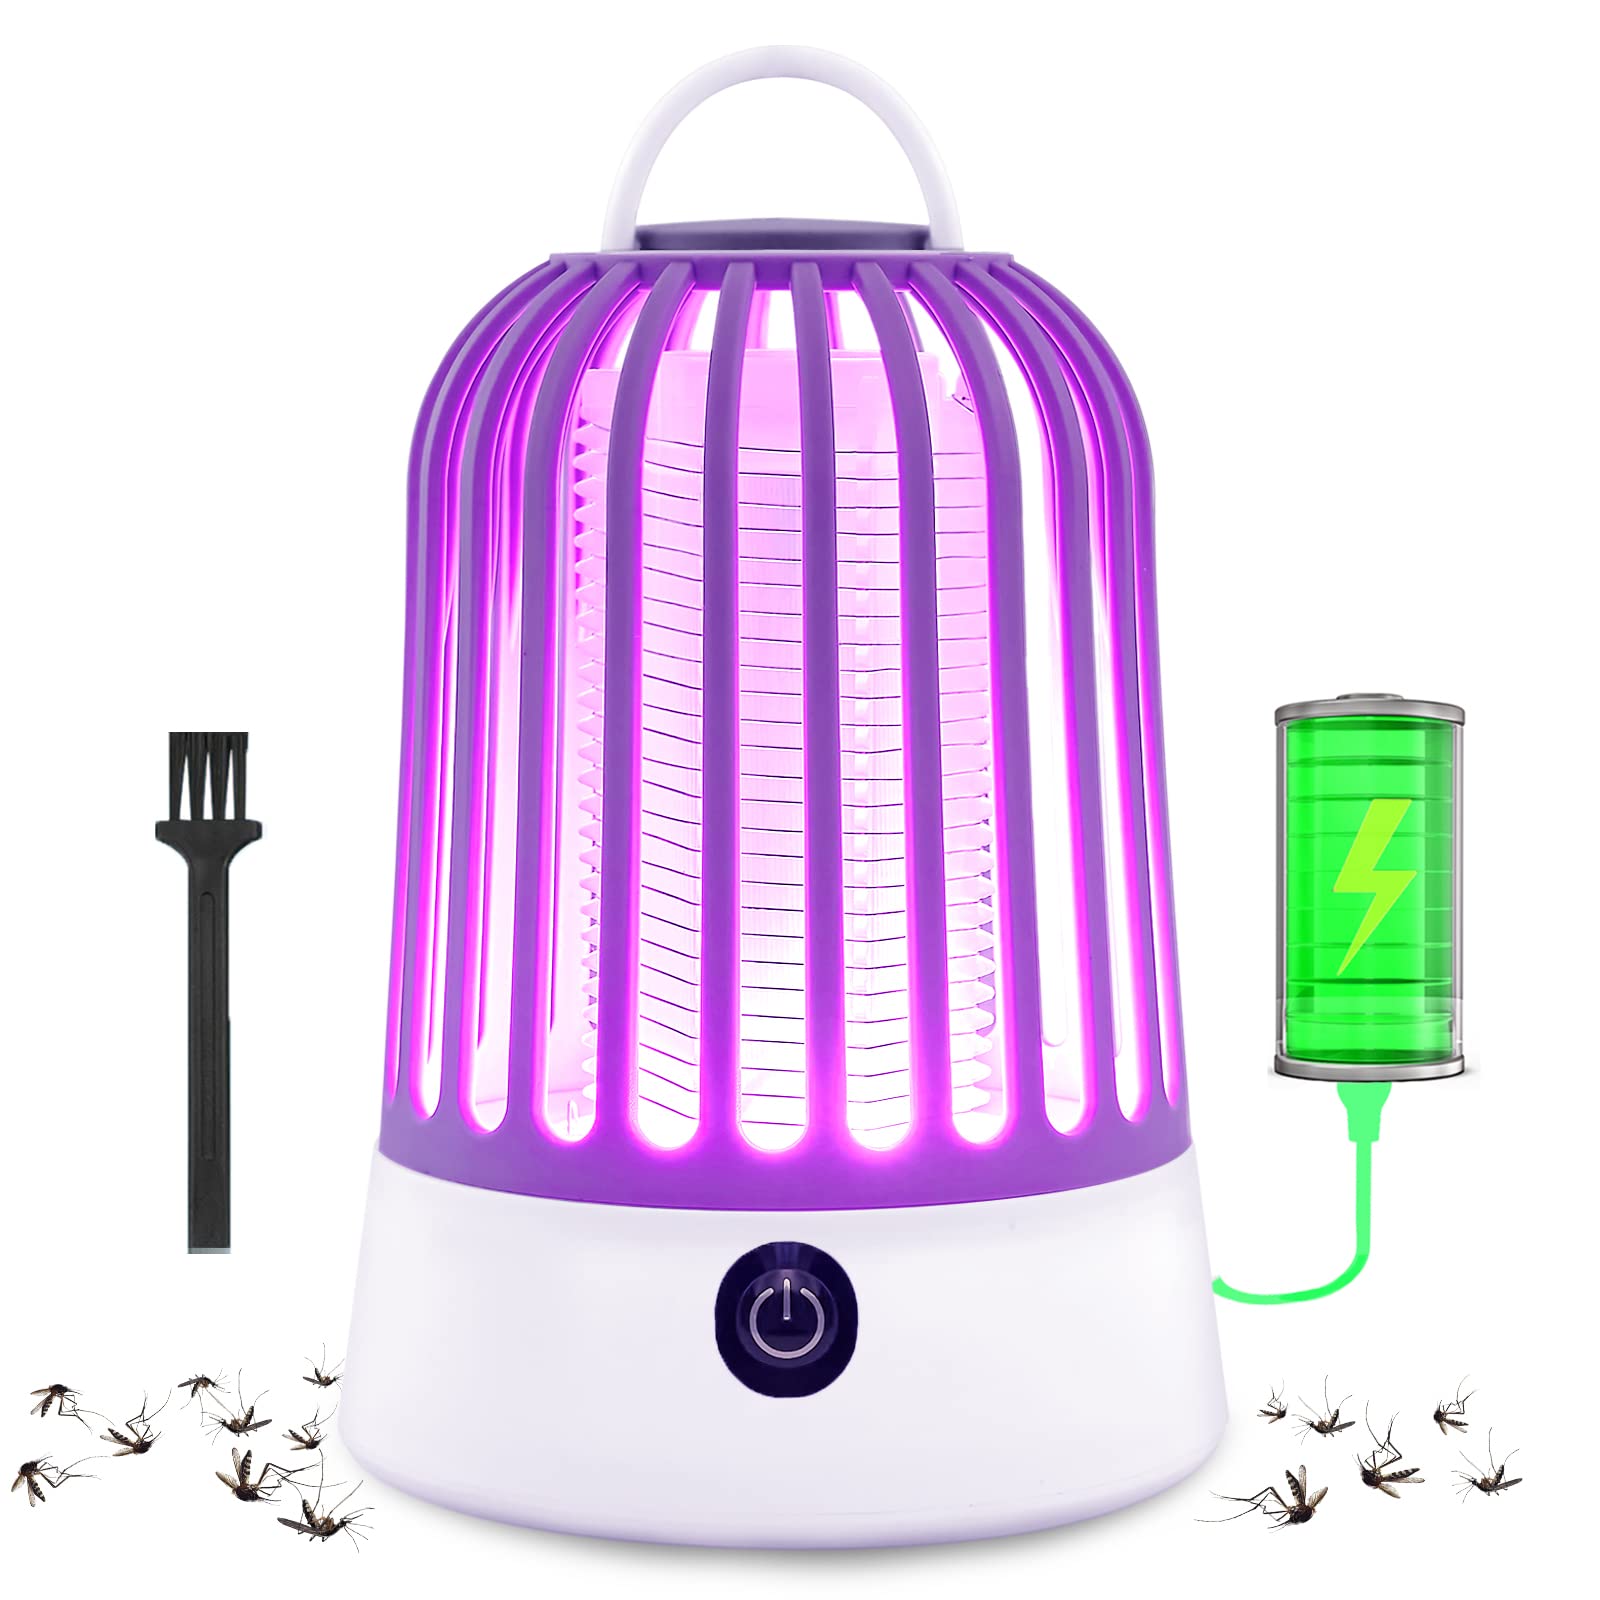 DLIDR Insektenvernichter, Wiederaufladbar Mückenfalle Mückenlampe, 5W Mückenschutz Insektenvernichter Elektrisch Fliegenfalle Elektrisch, UV Fliegenfalle Innenbereich Insektenfalle Fruchtfliegenfalle